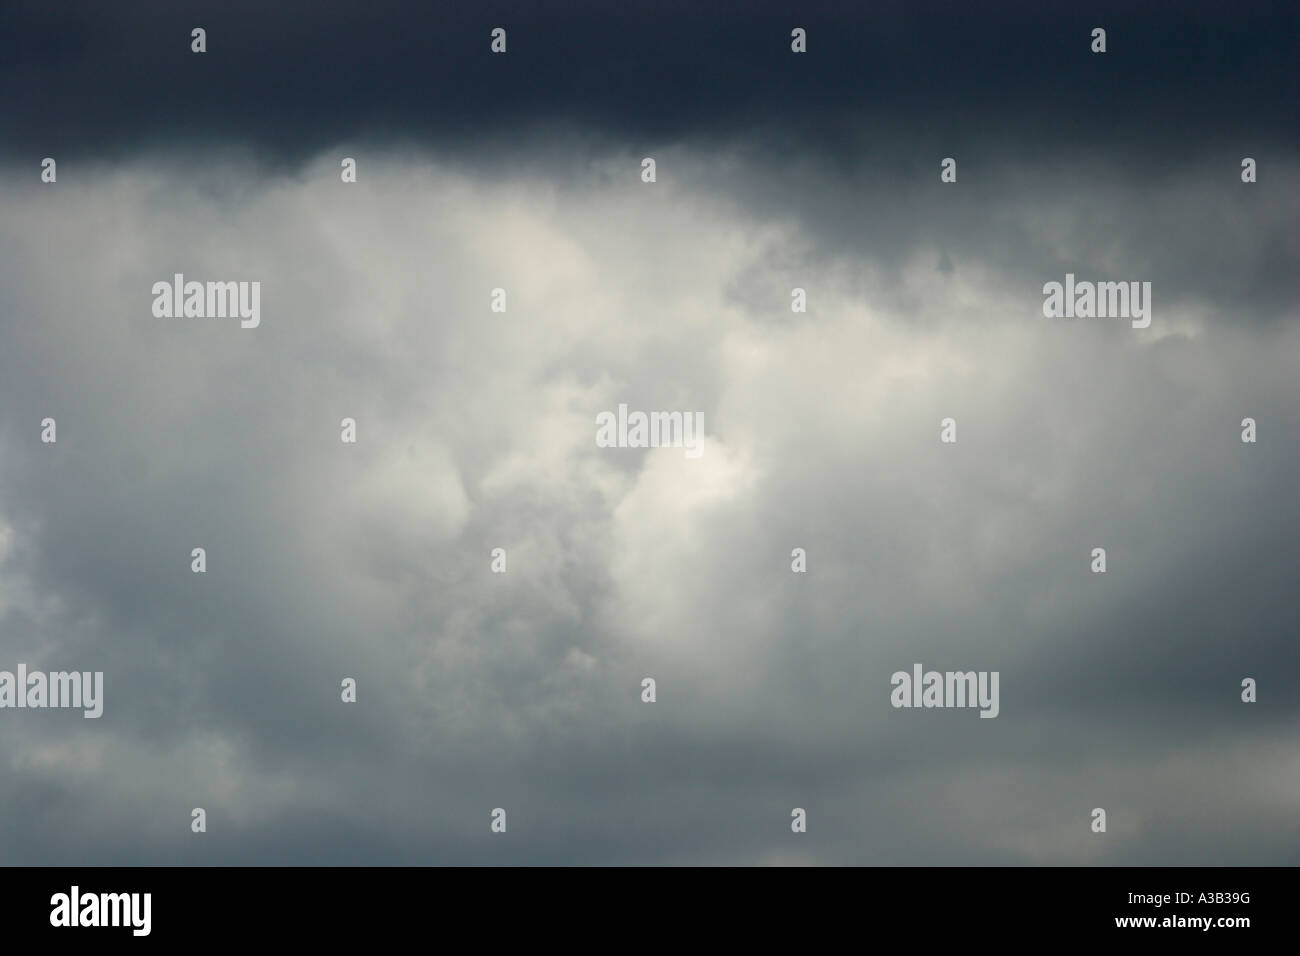 Gewitterwolken, Wolkengebilde, Skyscape, Klimawandel, globale Erwärmung, Treibhauseffekt, Umwelt Stockfoto